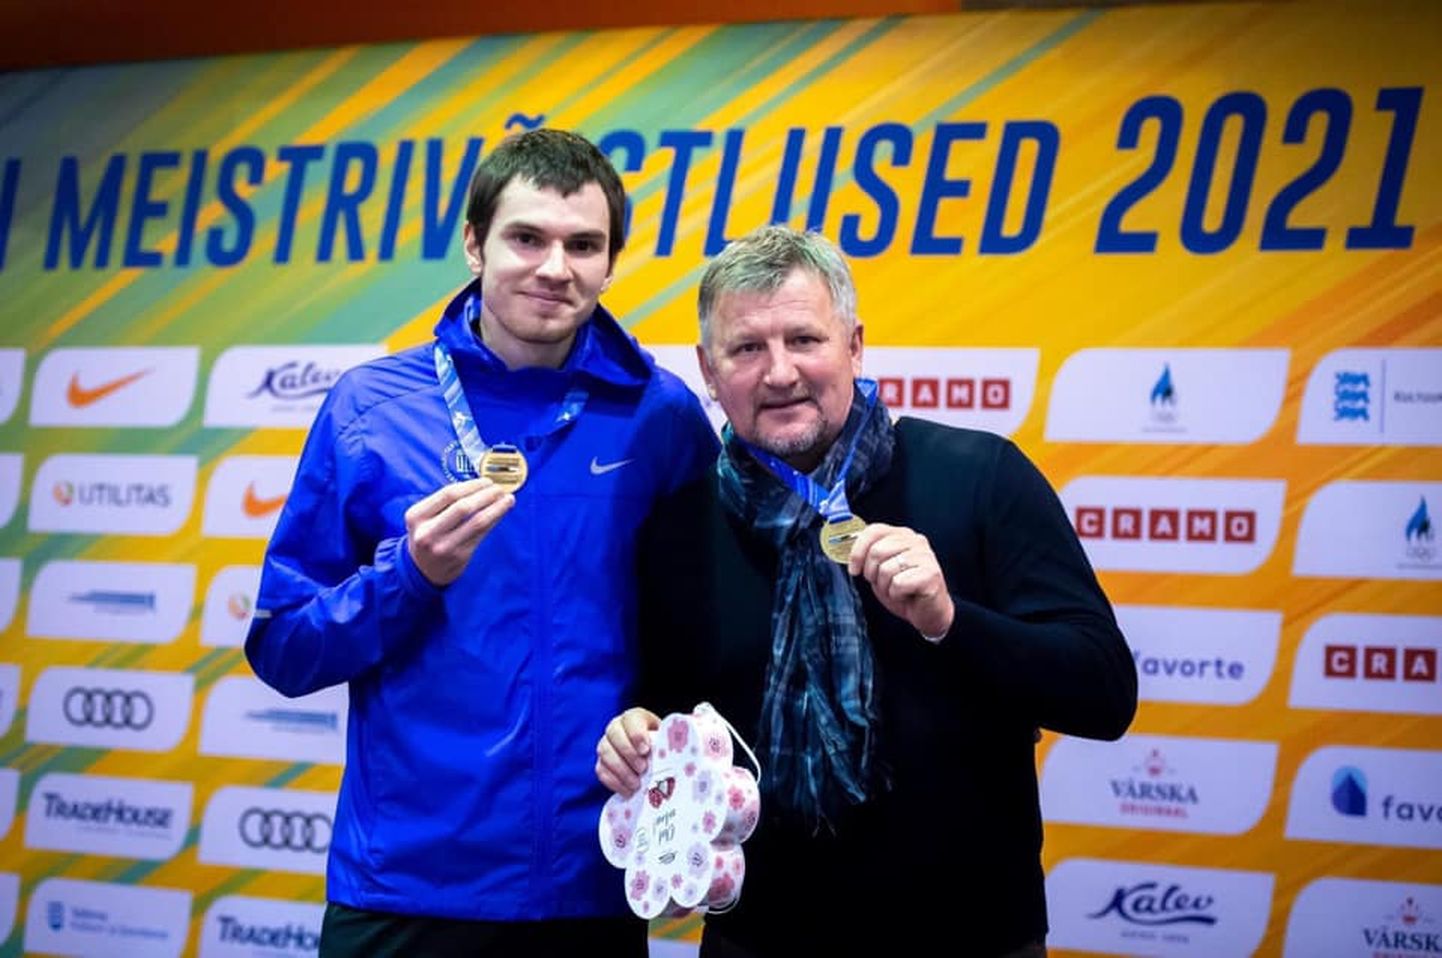 Денис Шалкаускас и его тренер Виктор Предбанников довольны, что после длившегося несколько лет спада бегуну удалось завоевать титул чемпиона Эстонии среди взрослых.